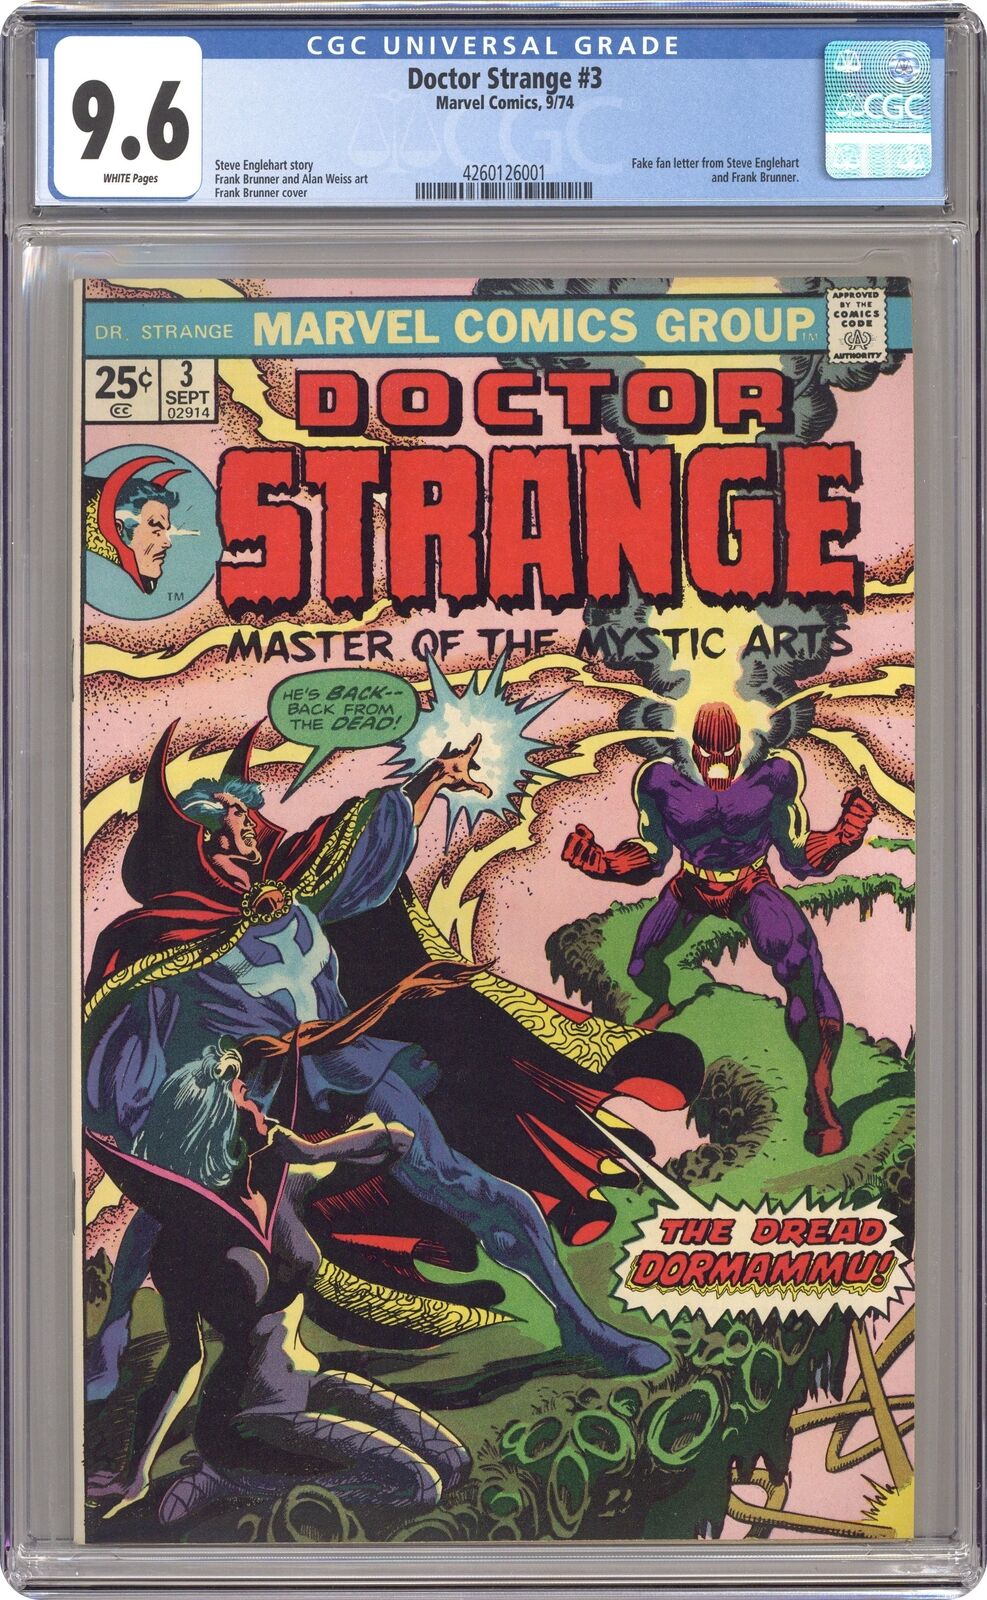 Doctor Strange #3 CGC 9.6 1974 4260126001